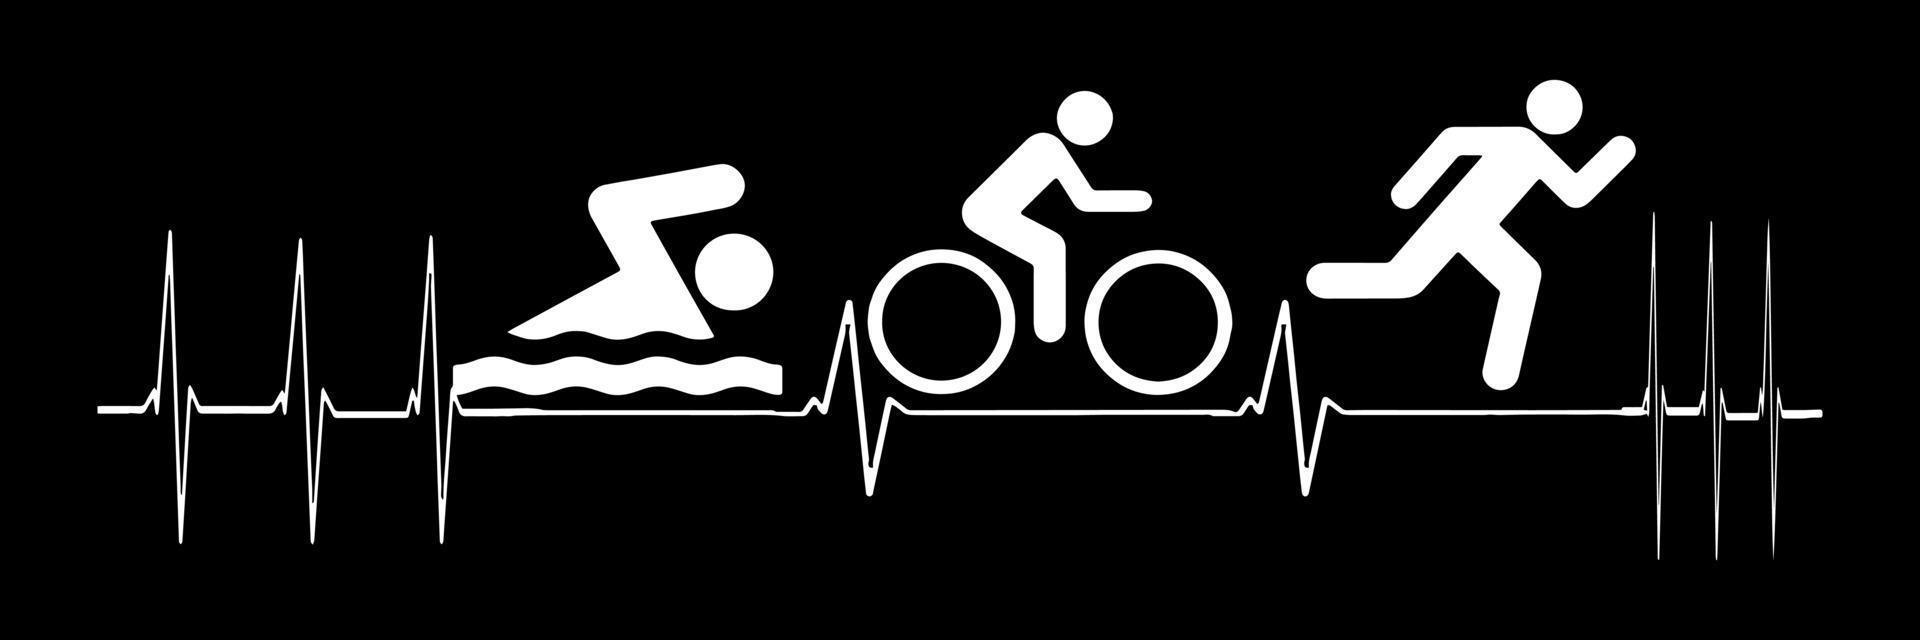 Herzschlag-Pulslinie mit Schwimmen, Radfahren und Laufen. Triathlon vektor